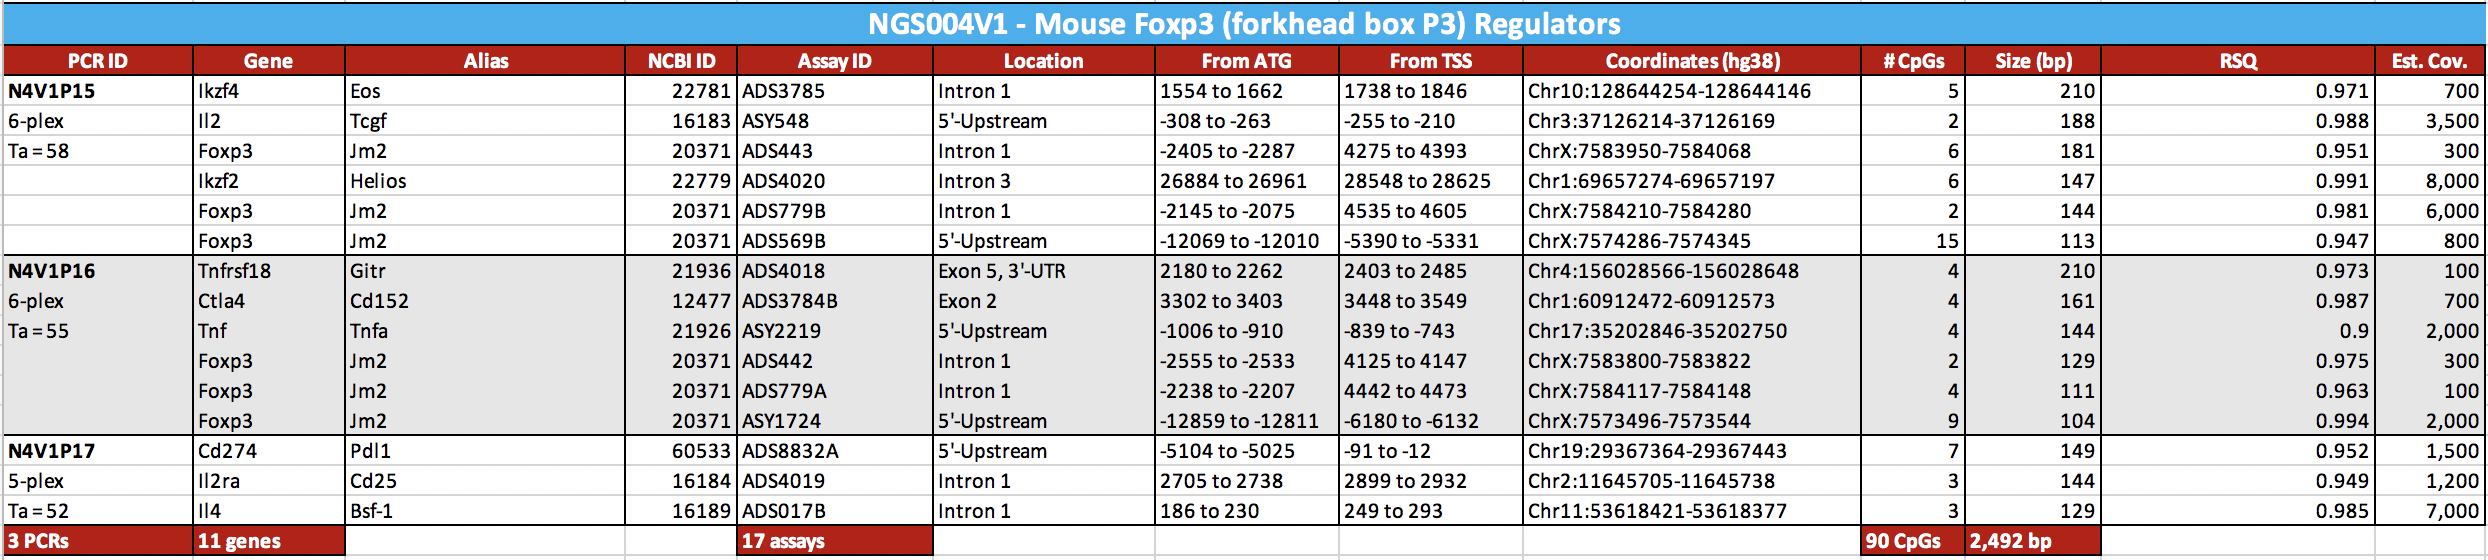 Mouse Foxp3 Forkhead-Box P3 Regulators